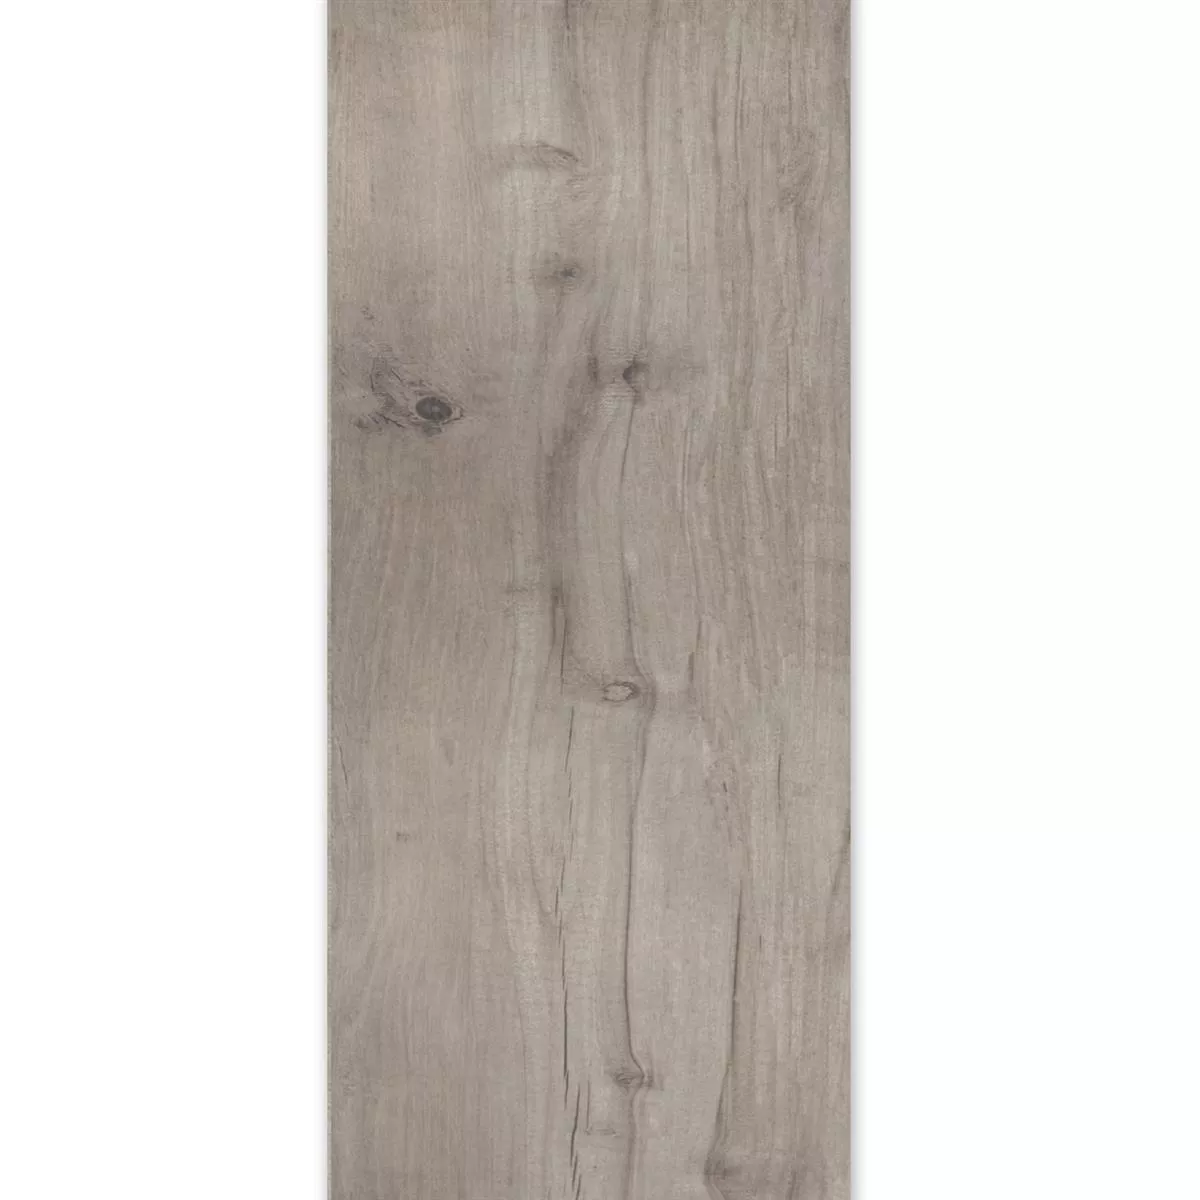 Próbka Płytki Podłogowe Wygląd Drewna Emparrado Łosoś 30x120cm